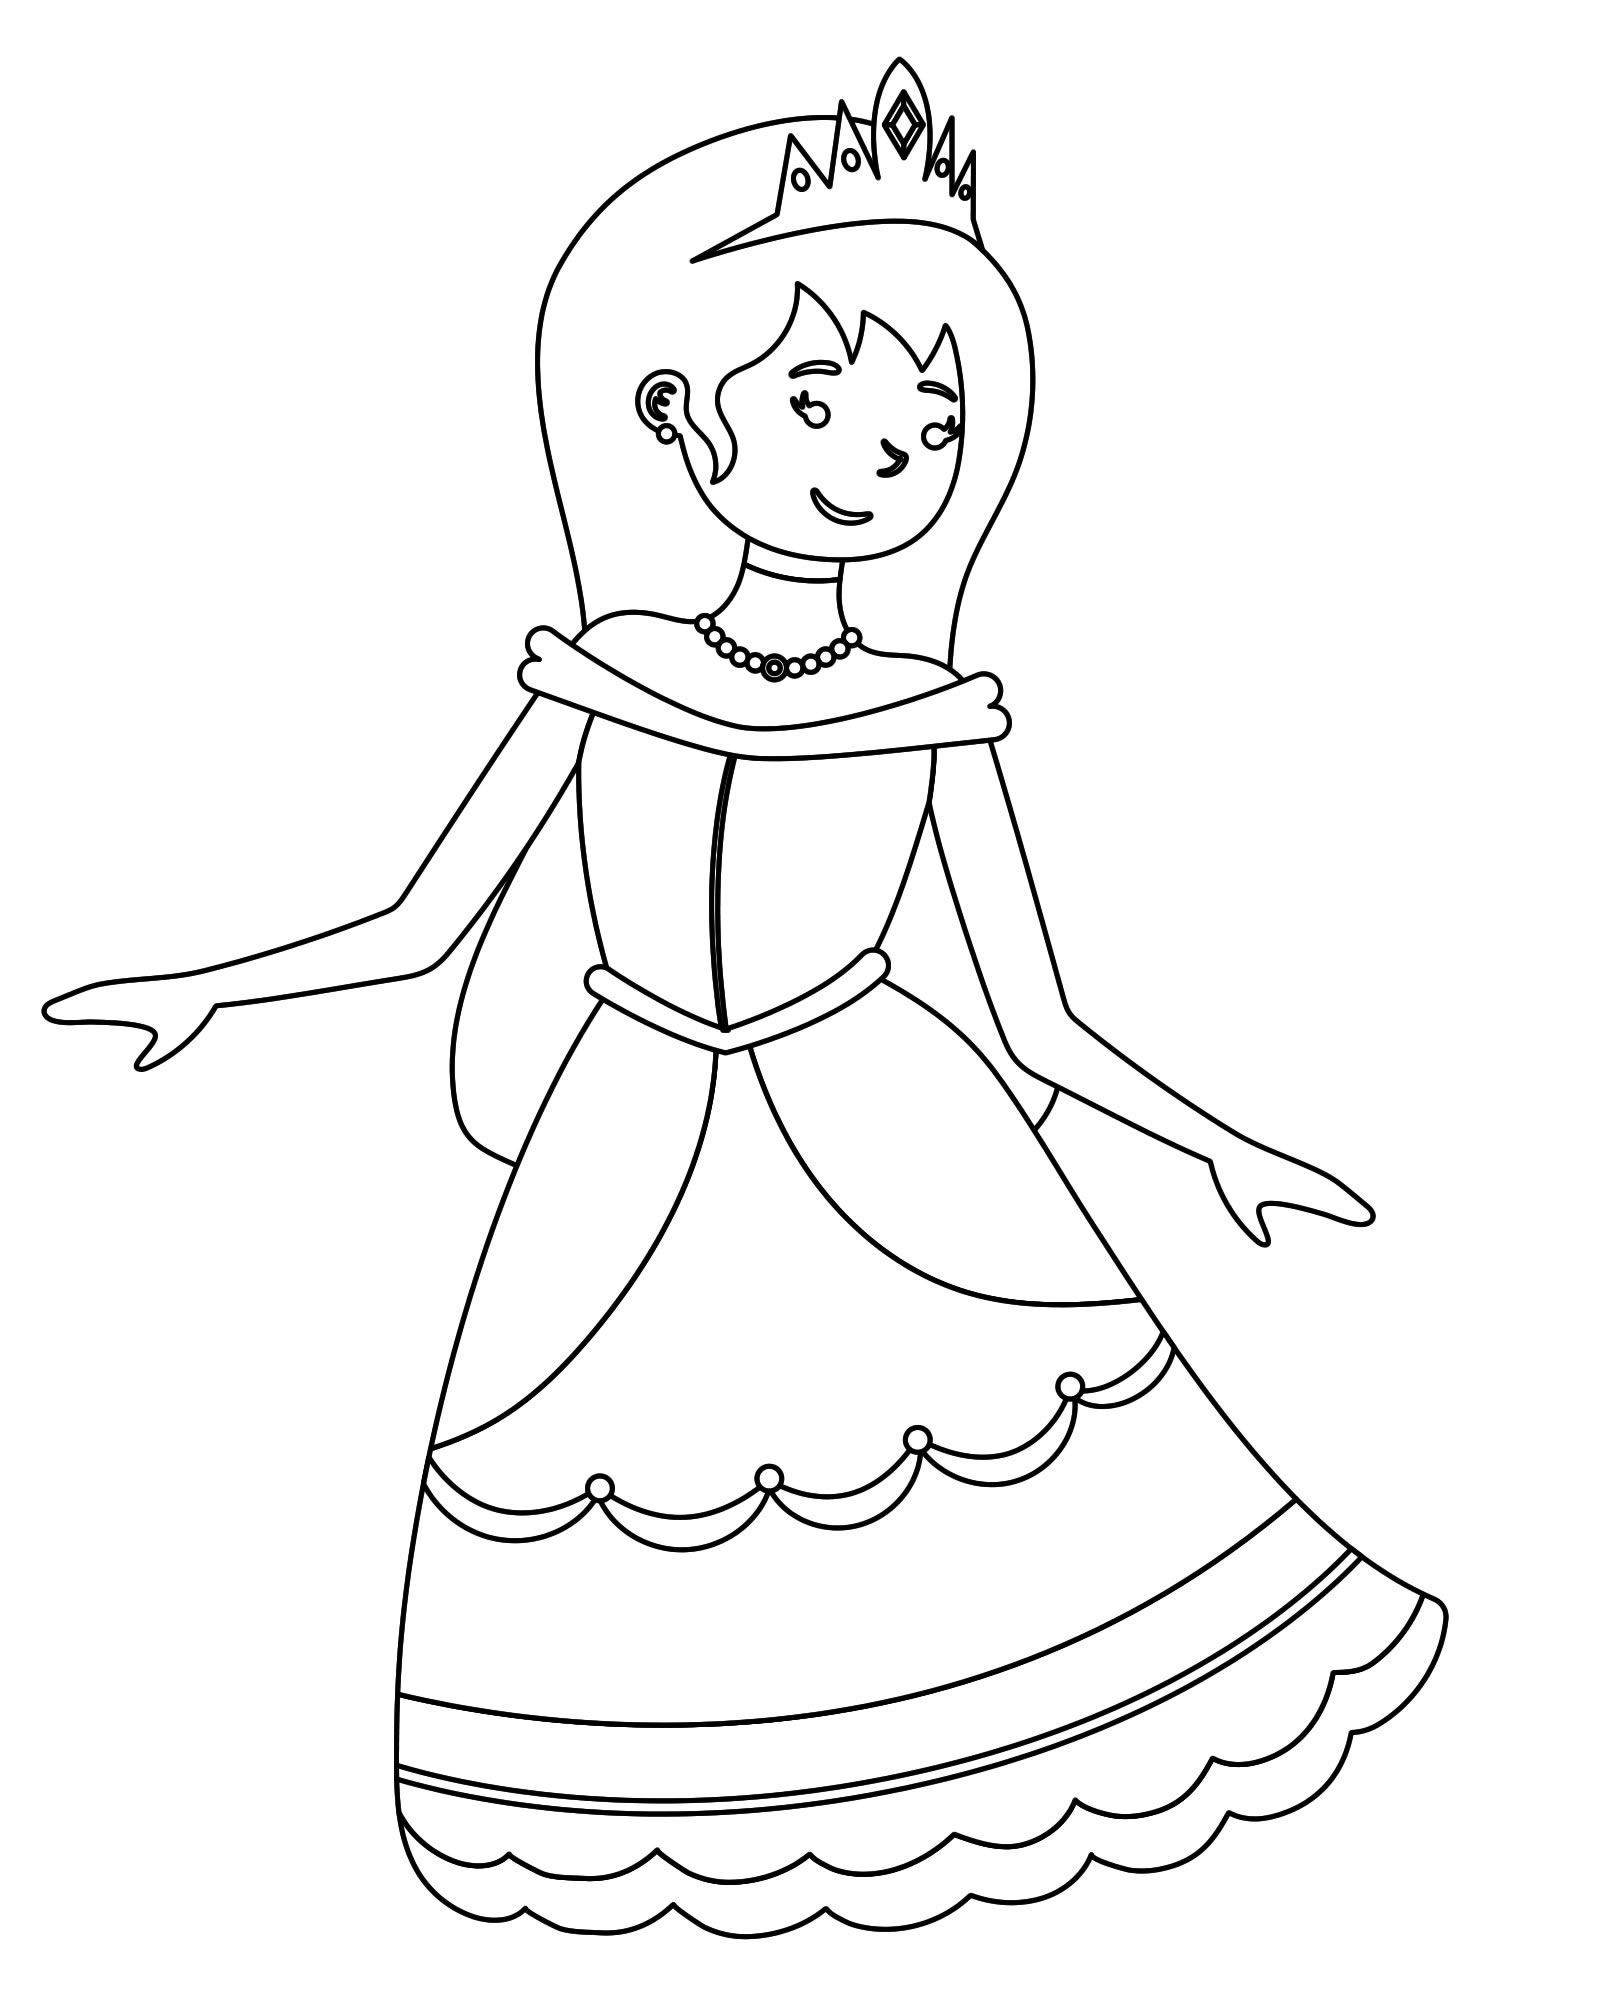 Принцесса в бальном платье раскраска для детей